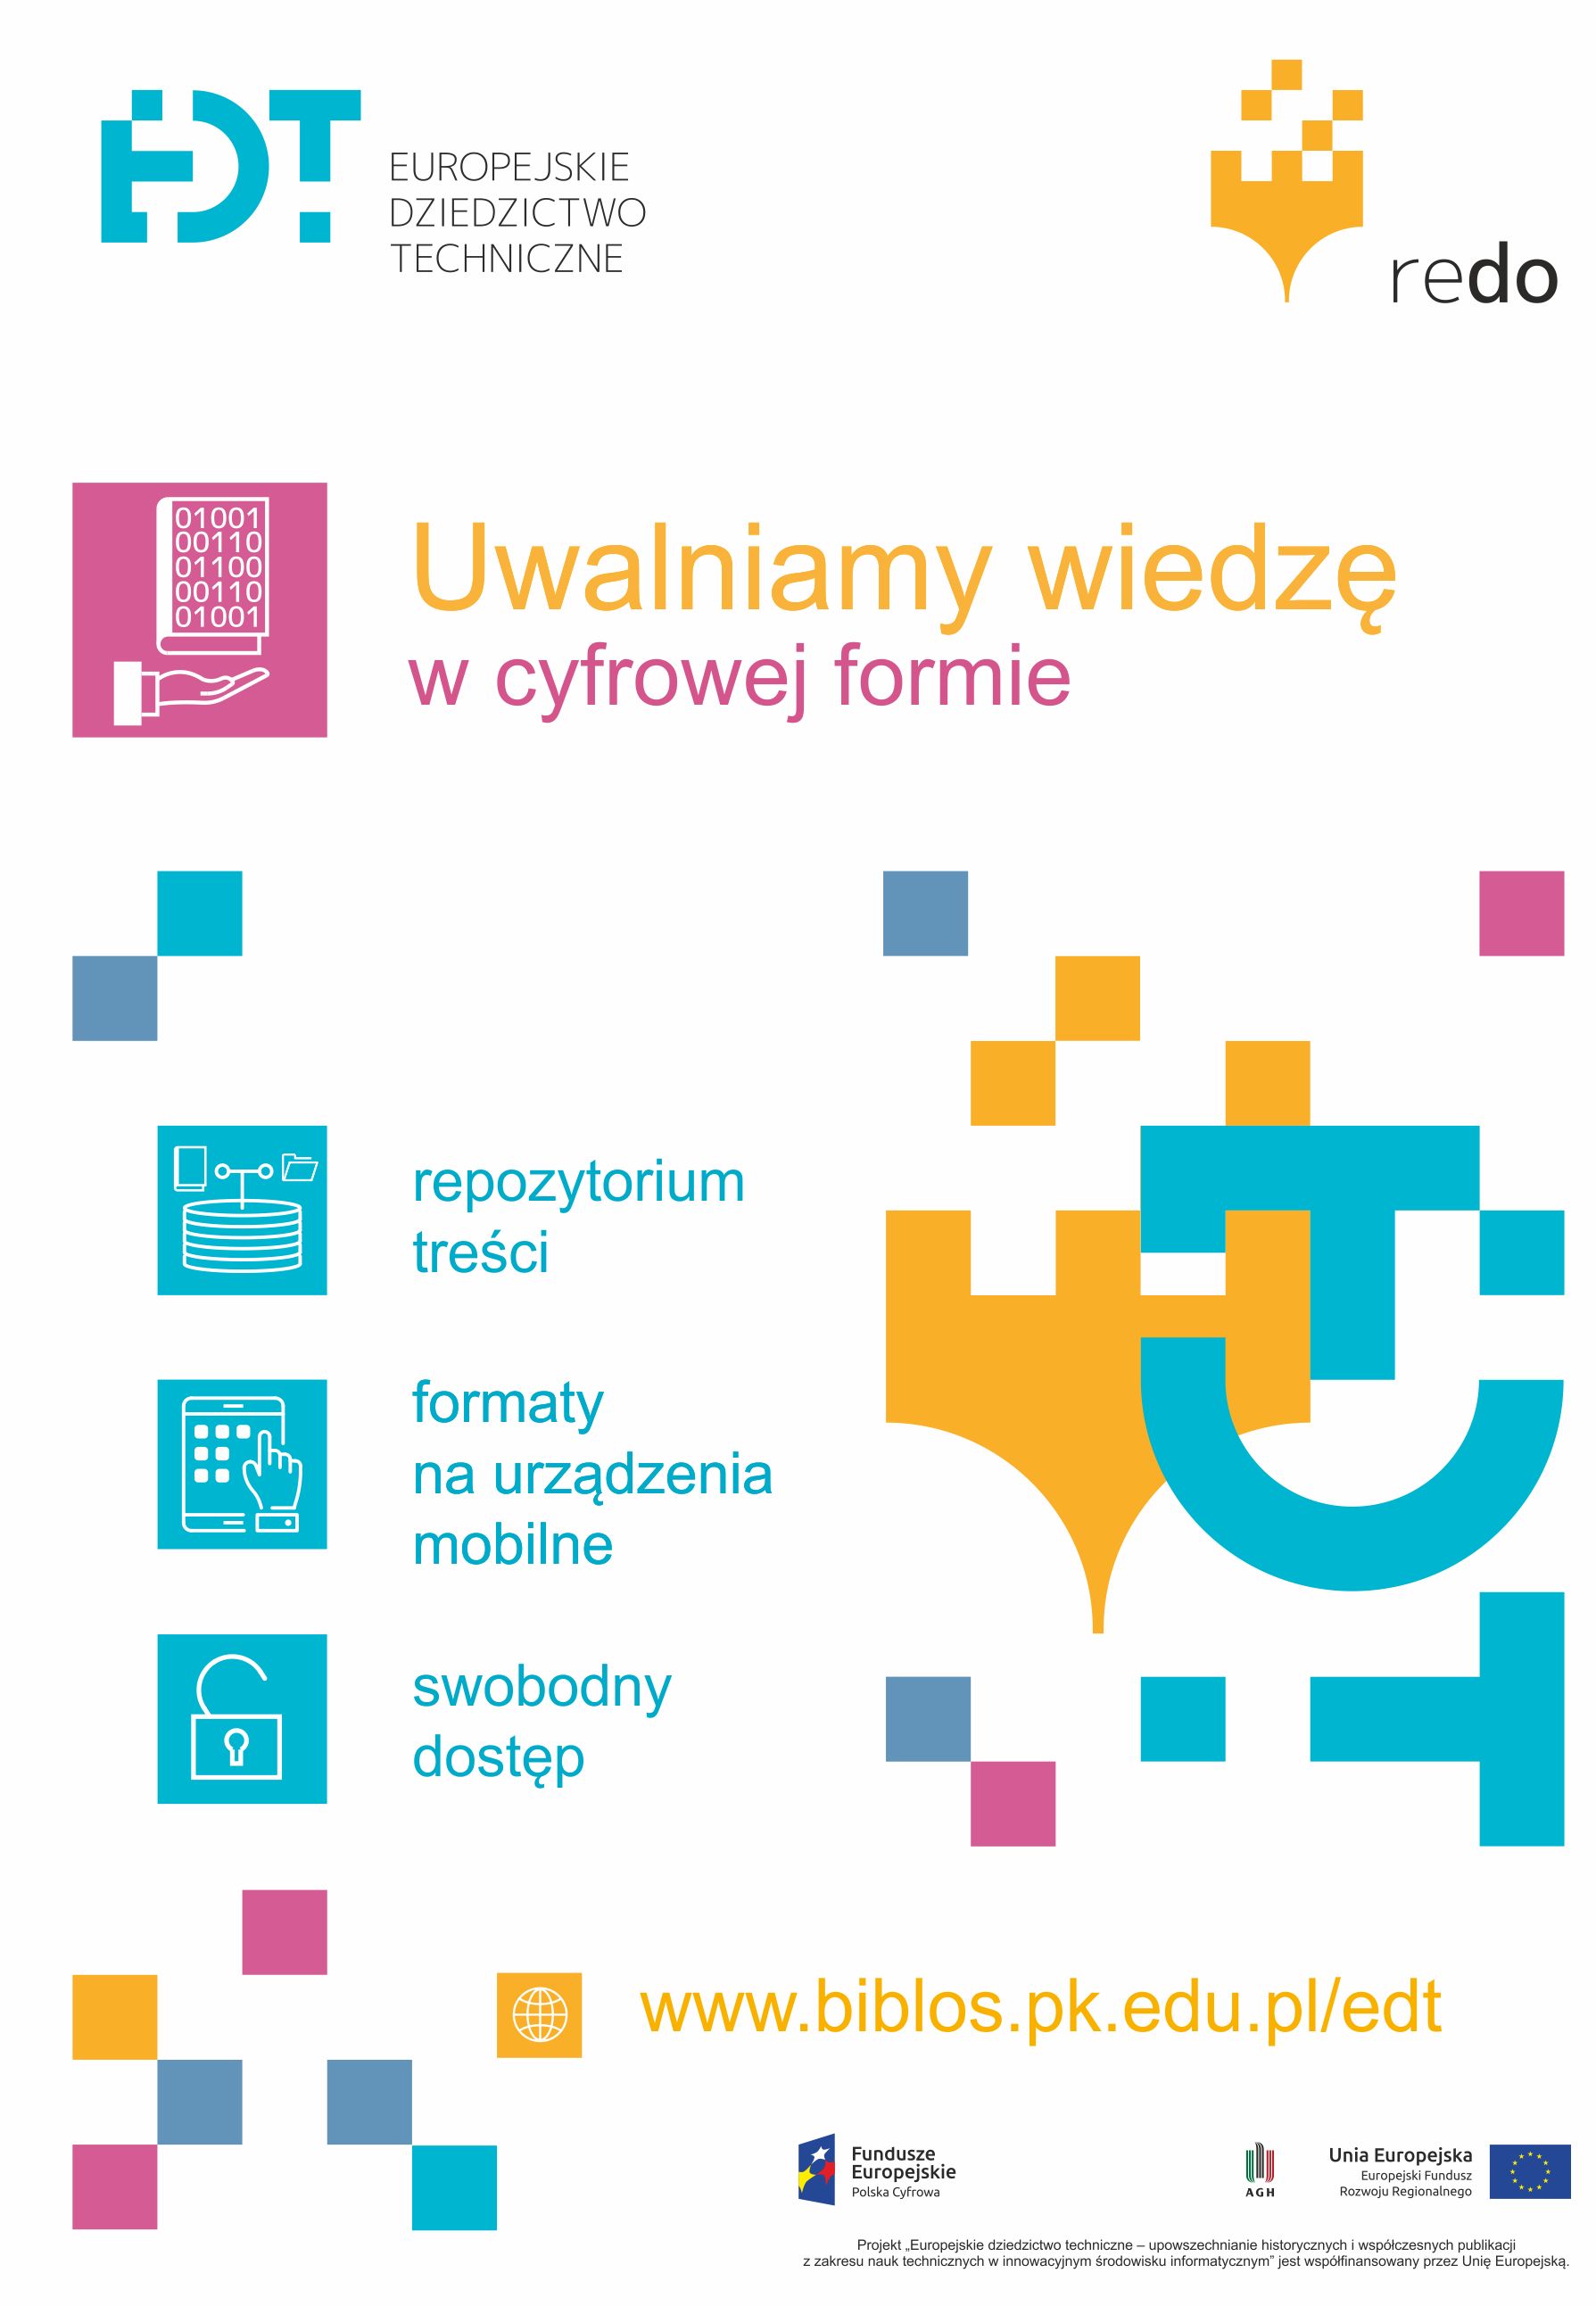 Europejskie dziedzictwo w otwartych kolekcjach cyfrowych, Kraków 26.03.2019 r.